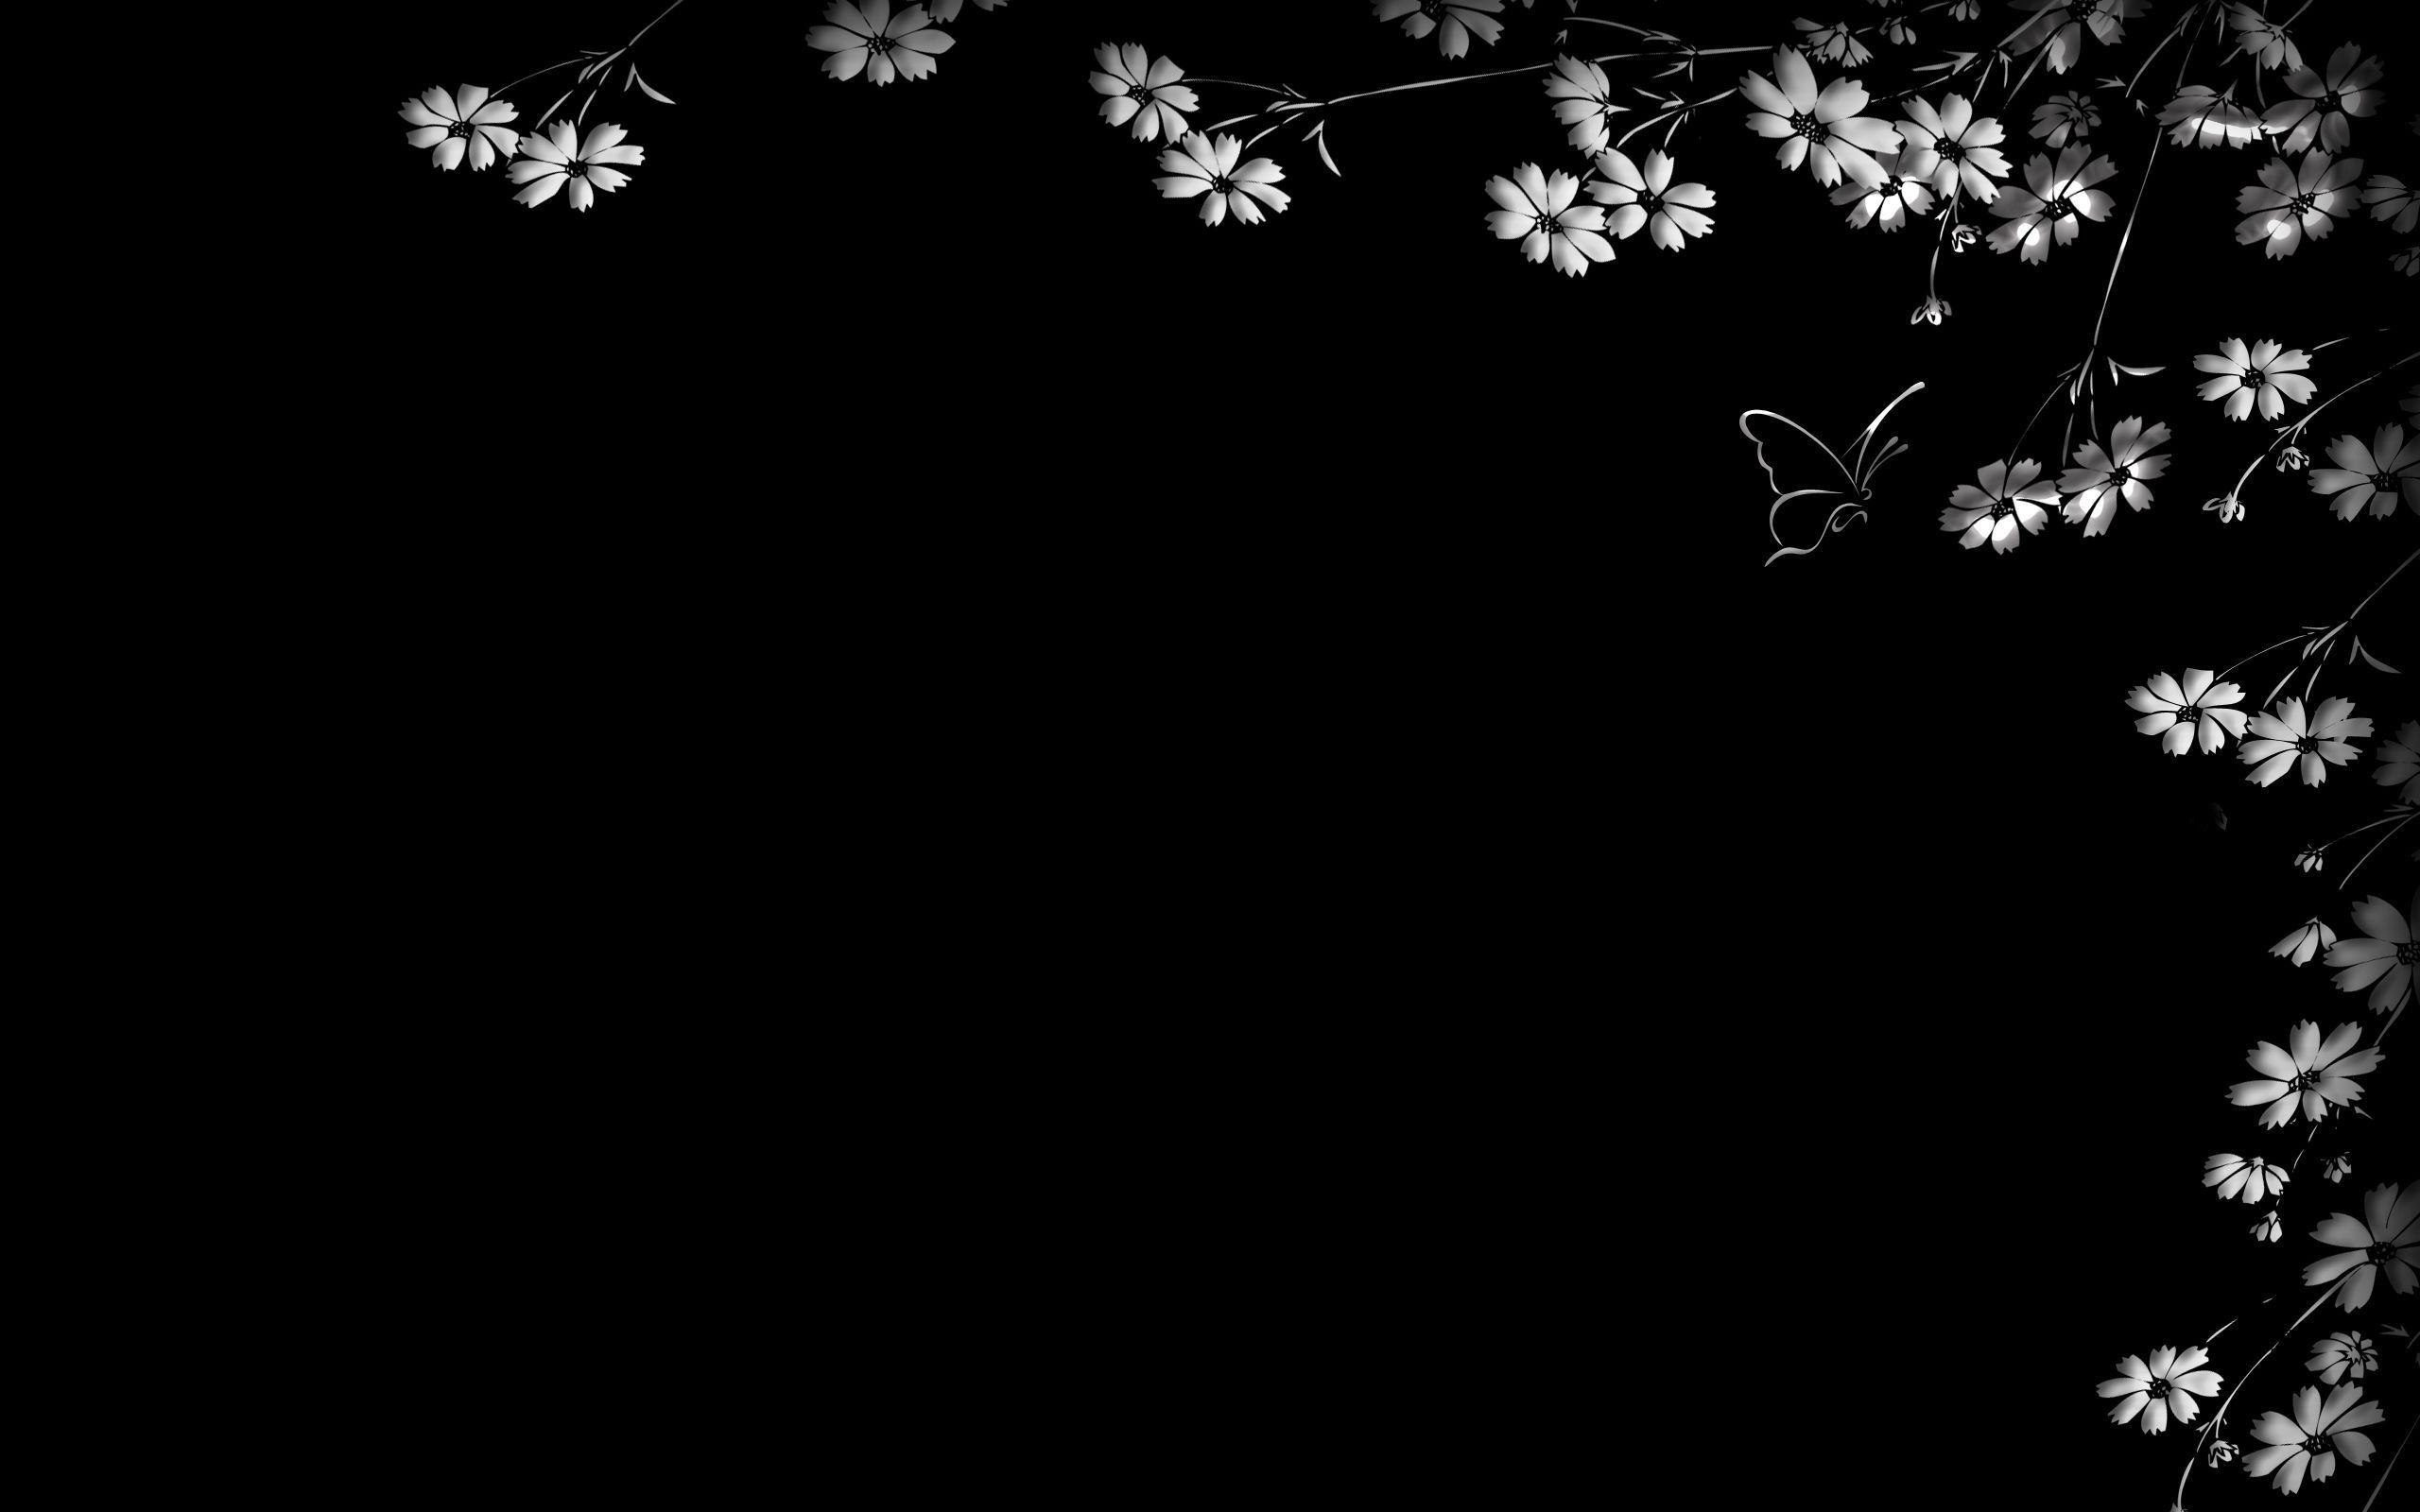 Hình nền laptop hoa đen sẽ mang tới cho bạn một không gian làm việc trầm lắng và đầy ấn tượng. Wallpaper Flare cung cấp cho bạn hàng ngàn những hình nền đen với các họa tiết hoa đẹp mắt và độc đáo. Hãy lựa chọn cho mình một hình nền laptop hoa đen phù hợp nhất để tạo nên một màn hình độc đáo và đẹp mắt.